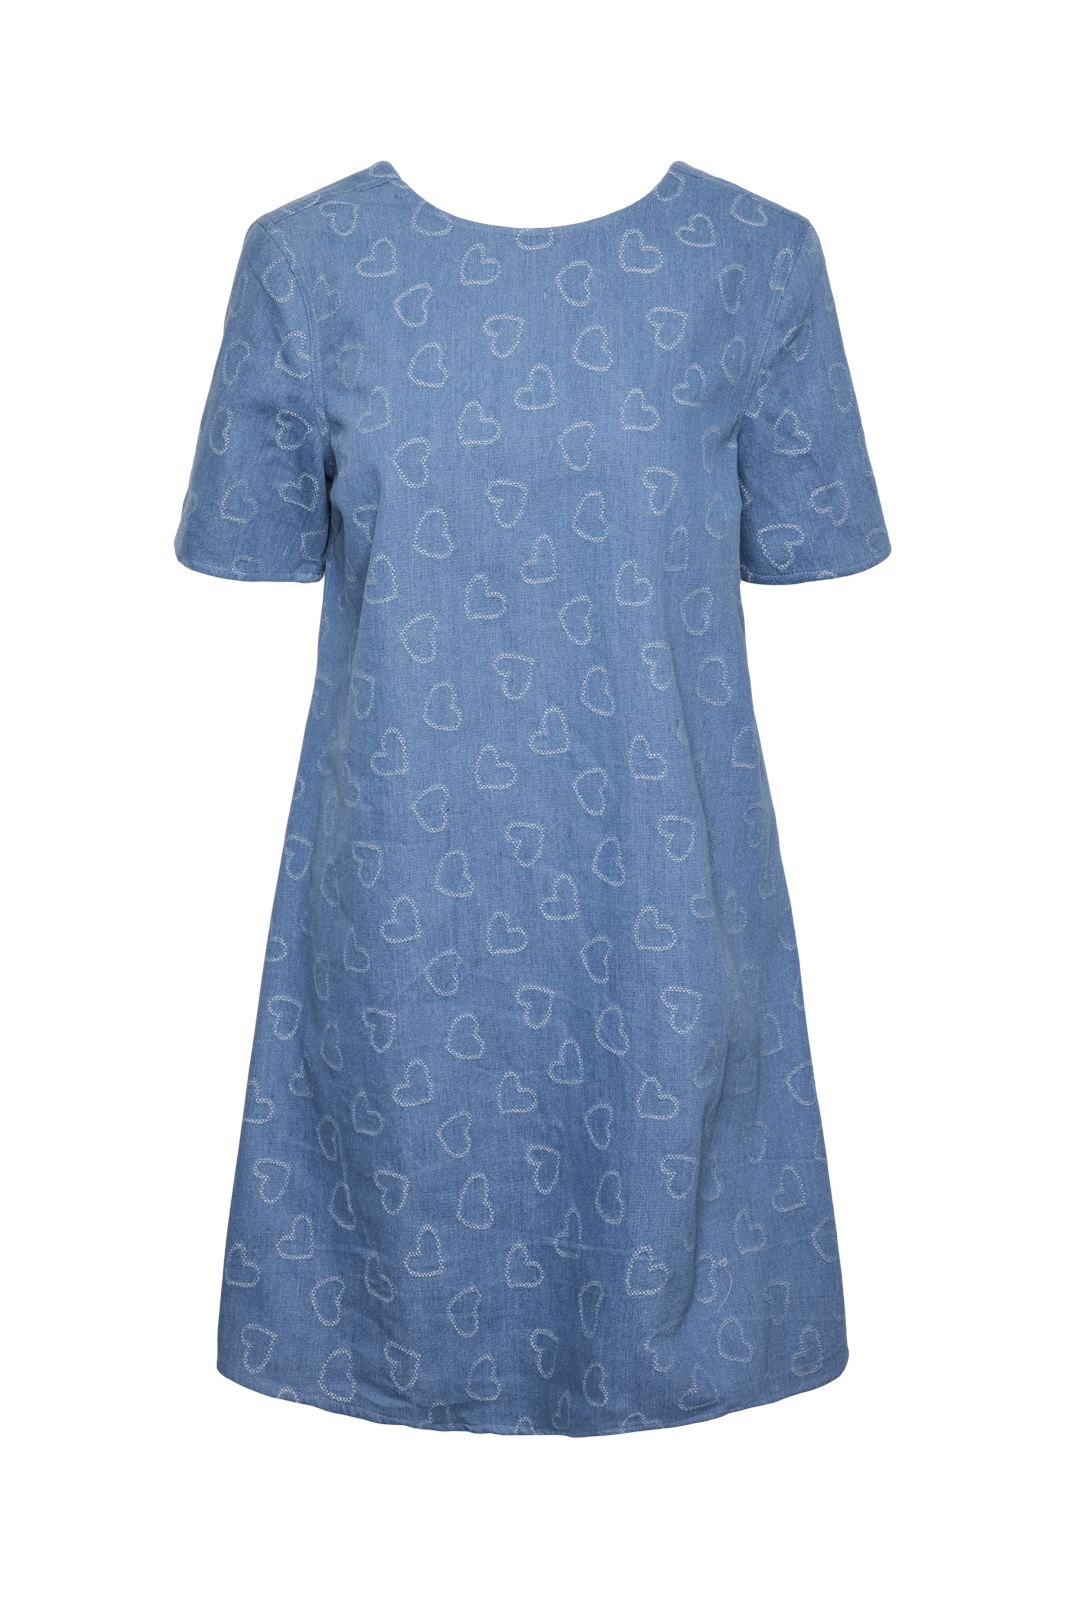 Pieces - Pcdiana Ss O-Neck Short Dress - 4624192 Medium Blue Denim